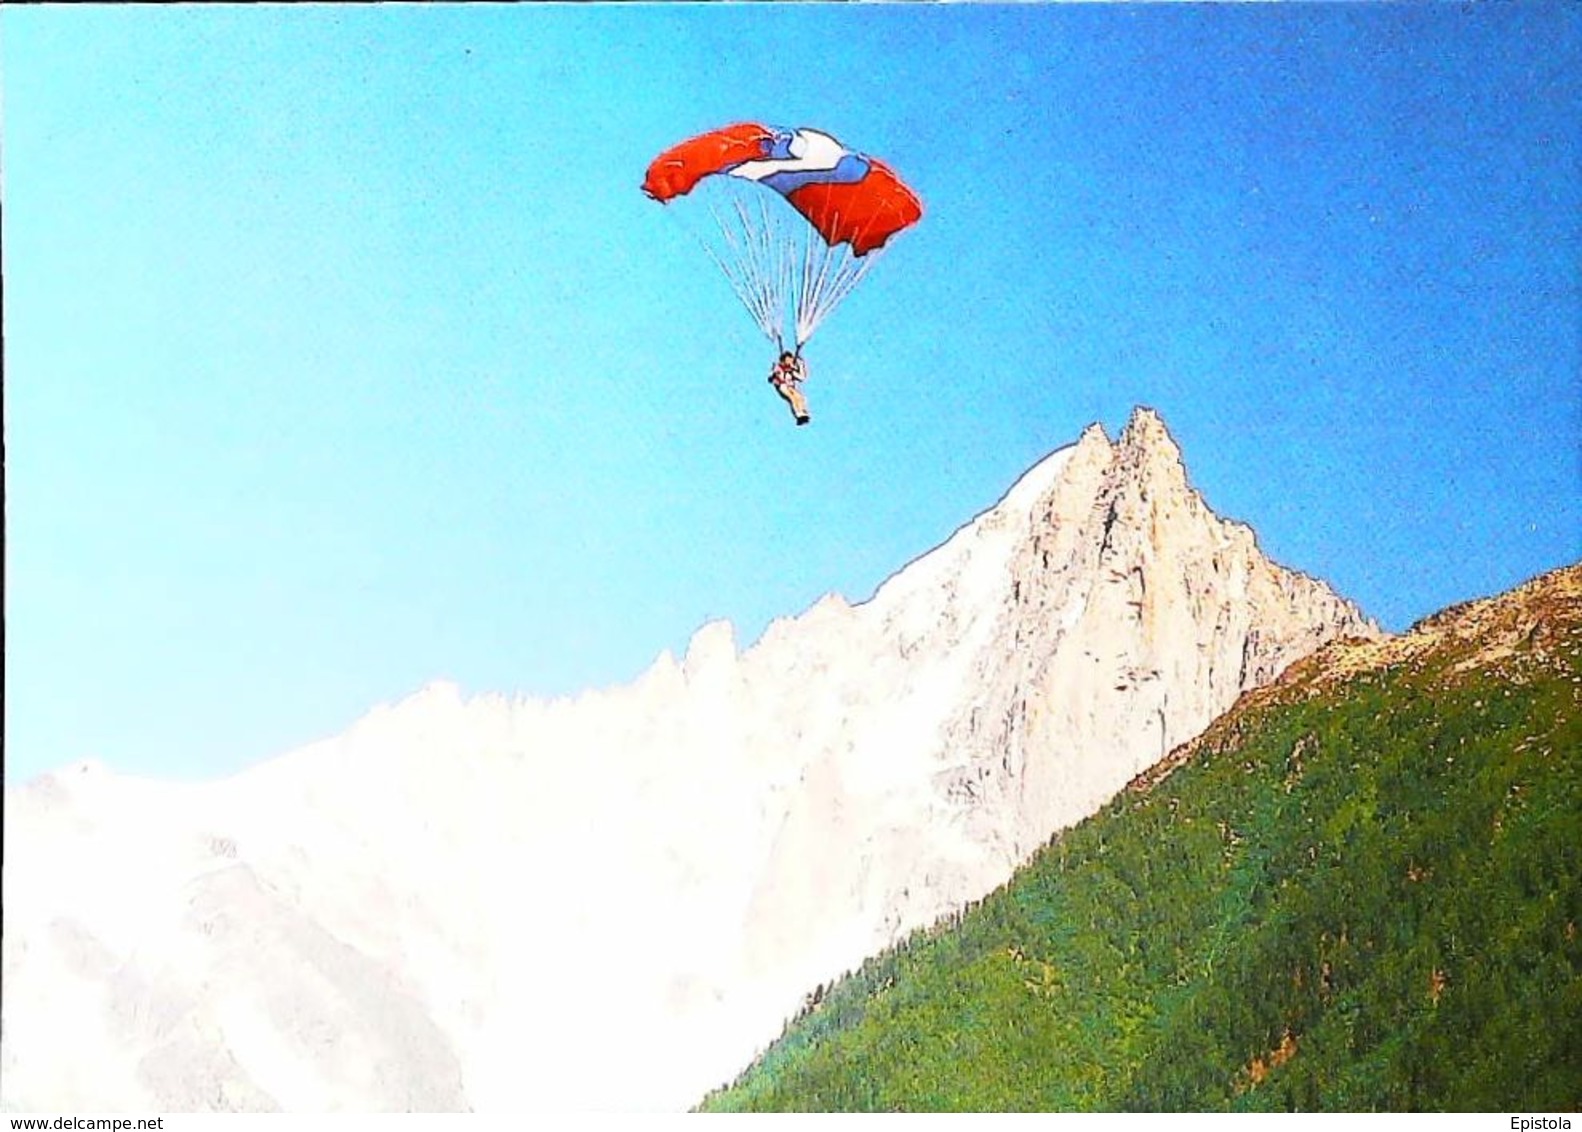 Parapente Les DRUS  (Mont Blanc) -  CPM Non Voyagé - Fallschirmspringen